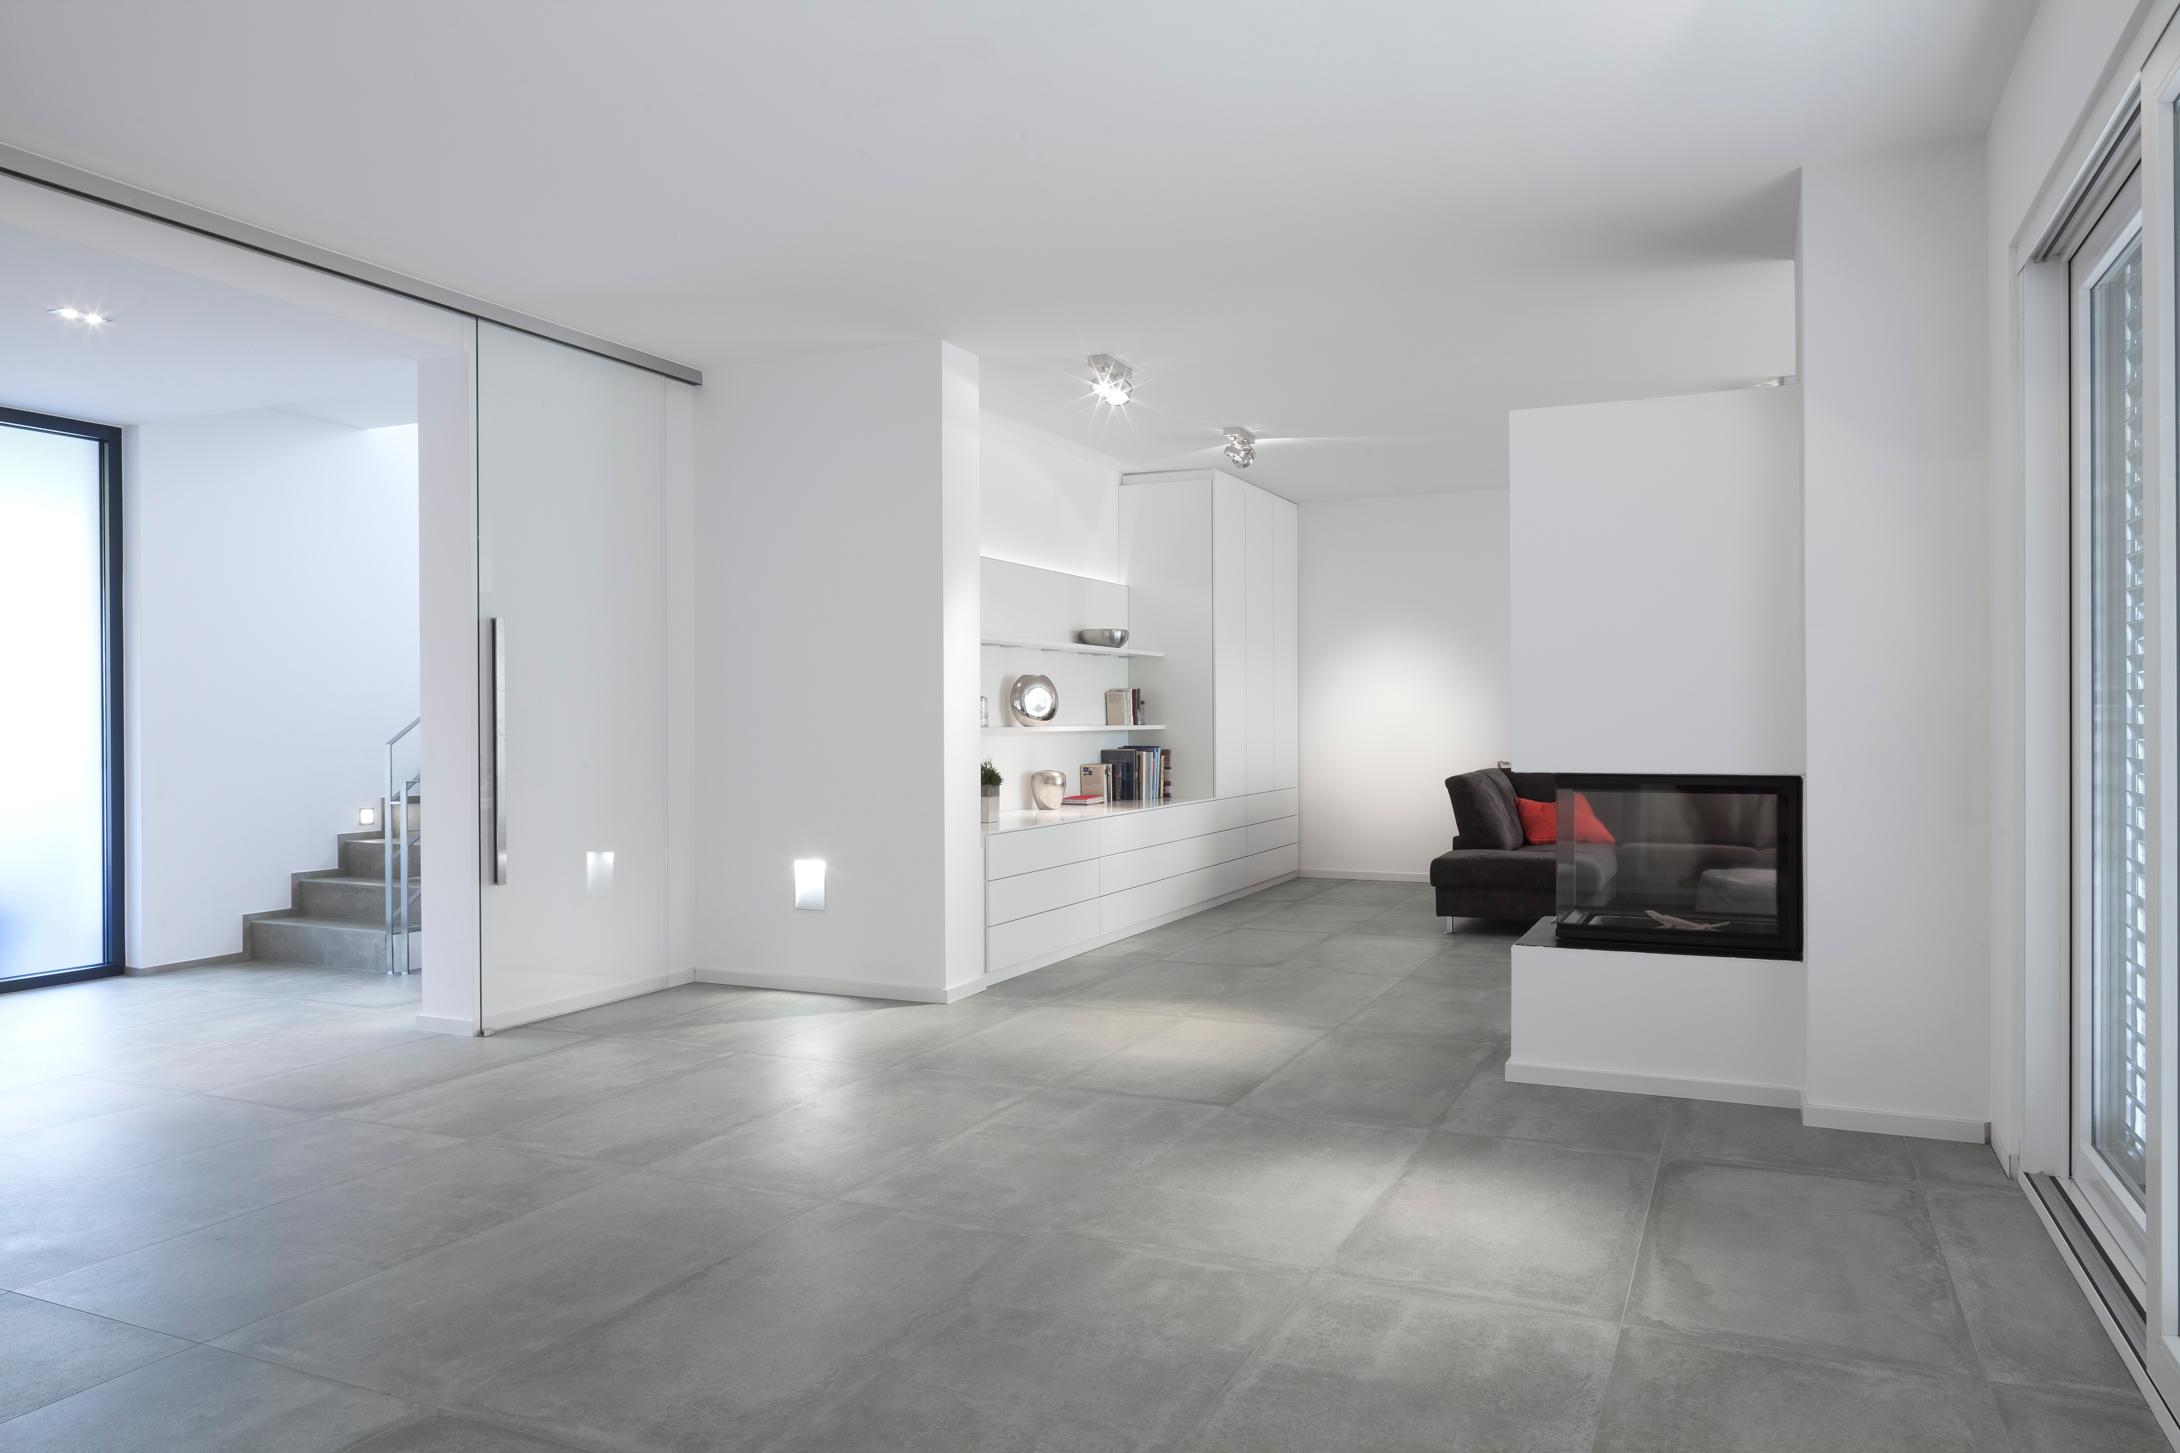 Wohnbereich #bauhausstil #terrasse #minimalistisch #eingang #flachdach #garage #innenarchitektur ©Constantin Meyer Photographie